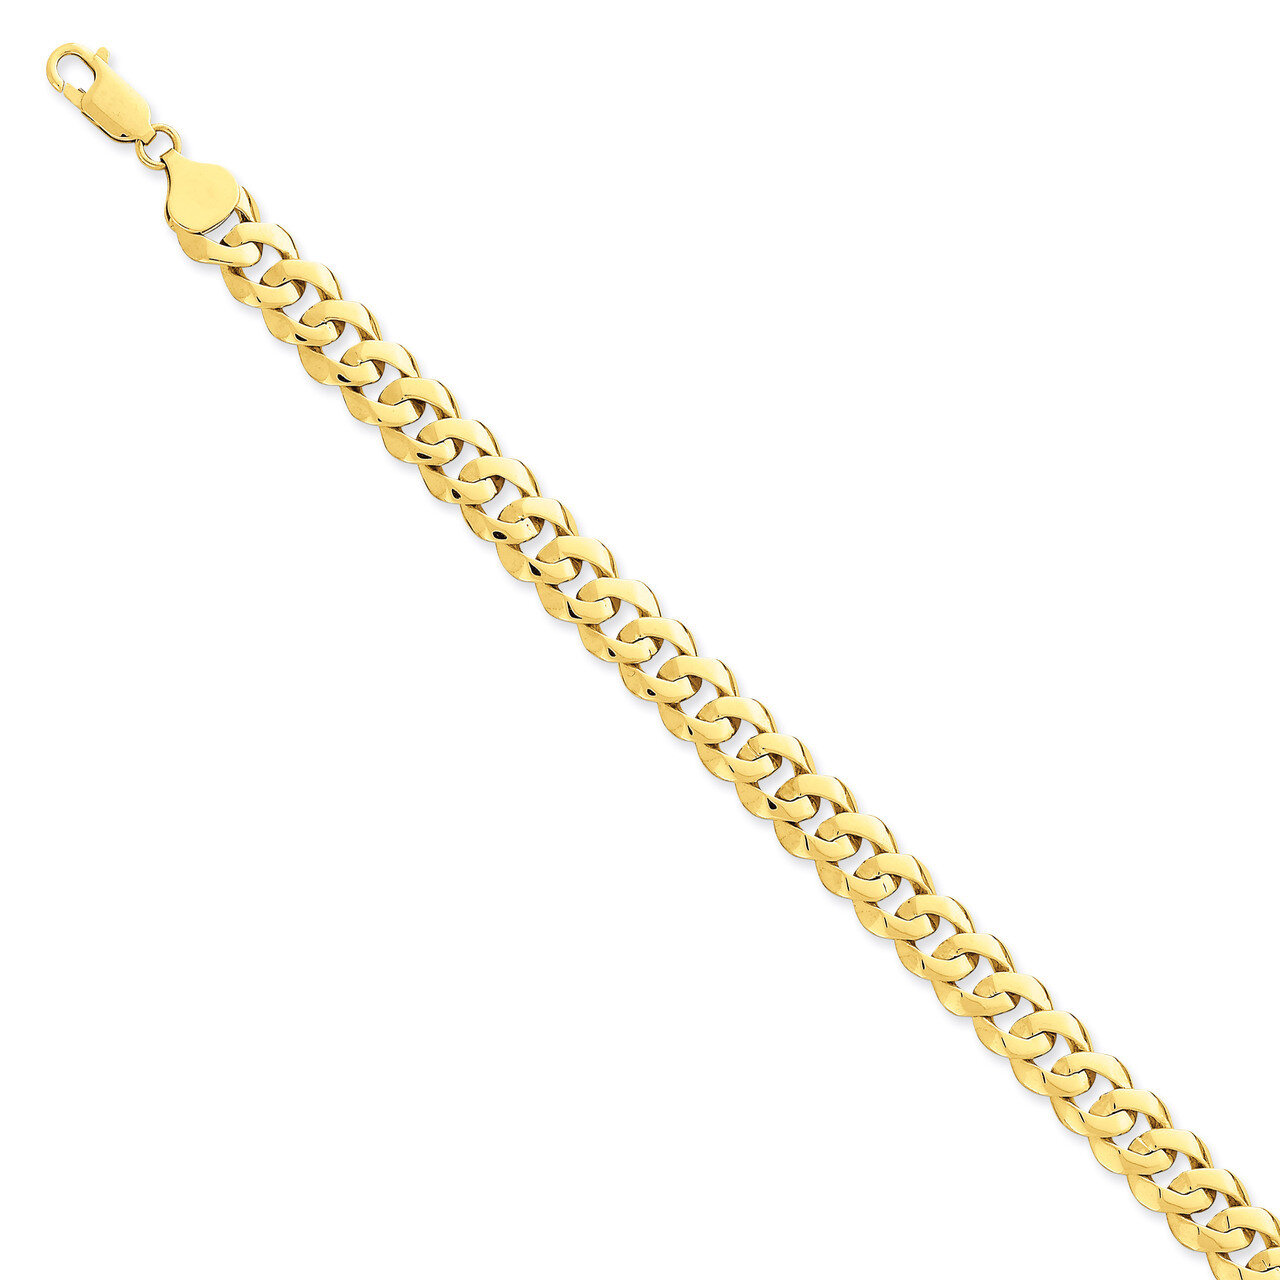 8.5mm Solid Hand-Polished Fancy Link Bracelet 8 Inch 14k Gold FL442-8